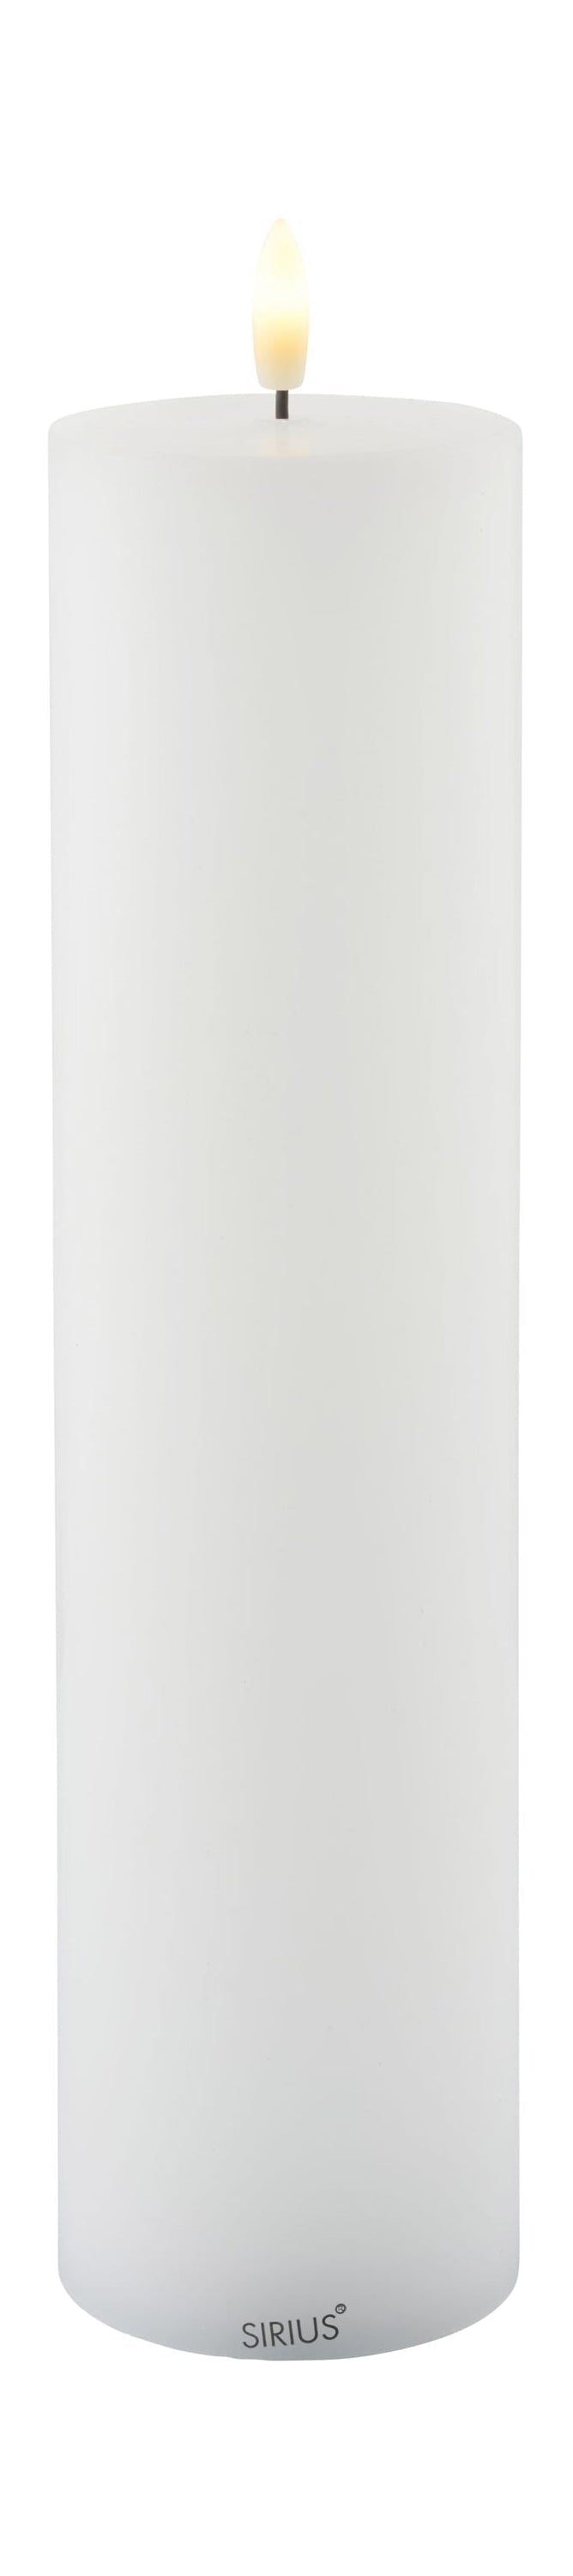 Sirius Sille oppladbar LED -stearinlyshvit, Ø7,5x H30 cm